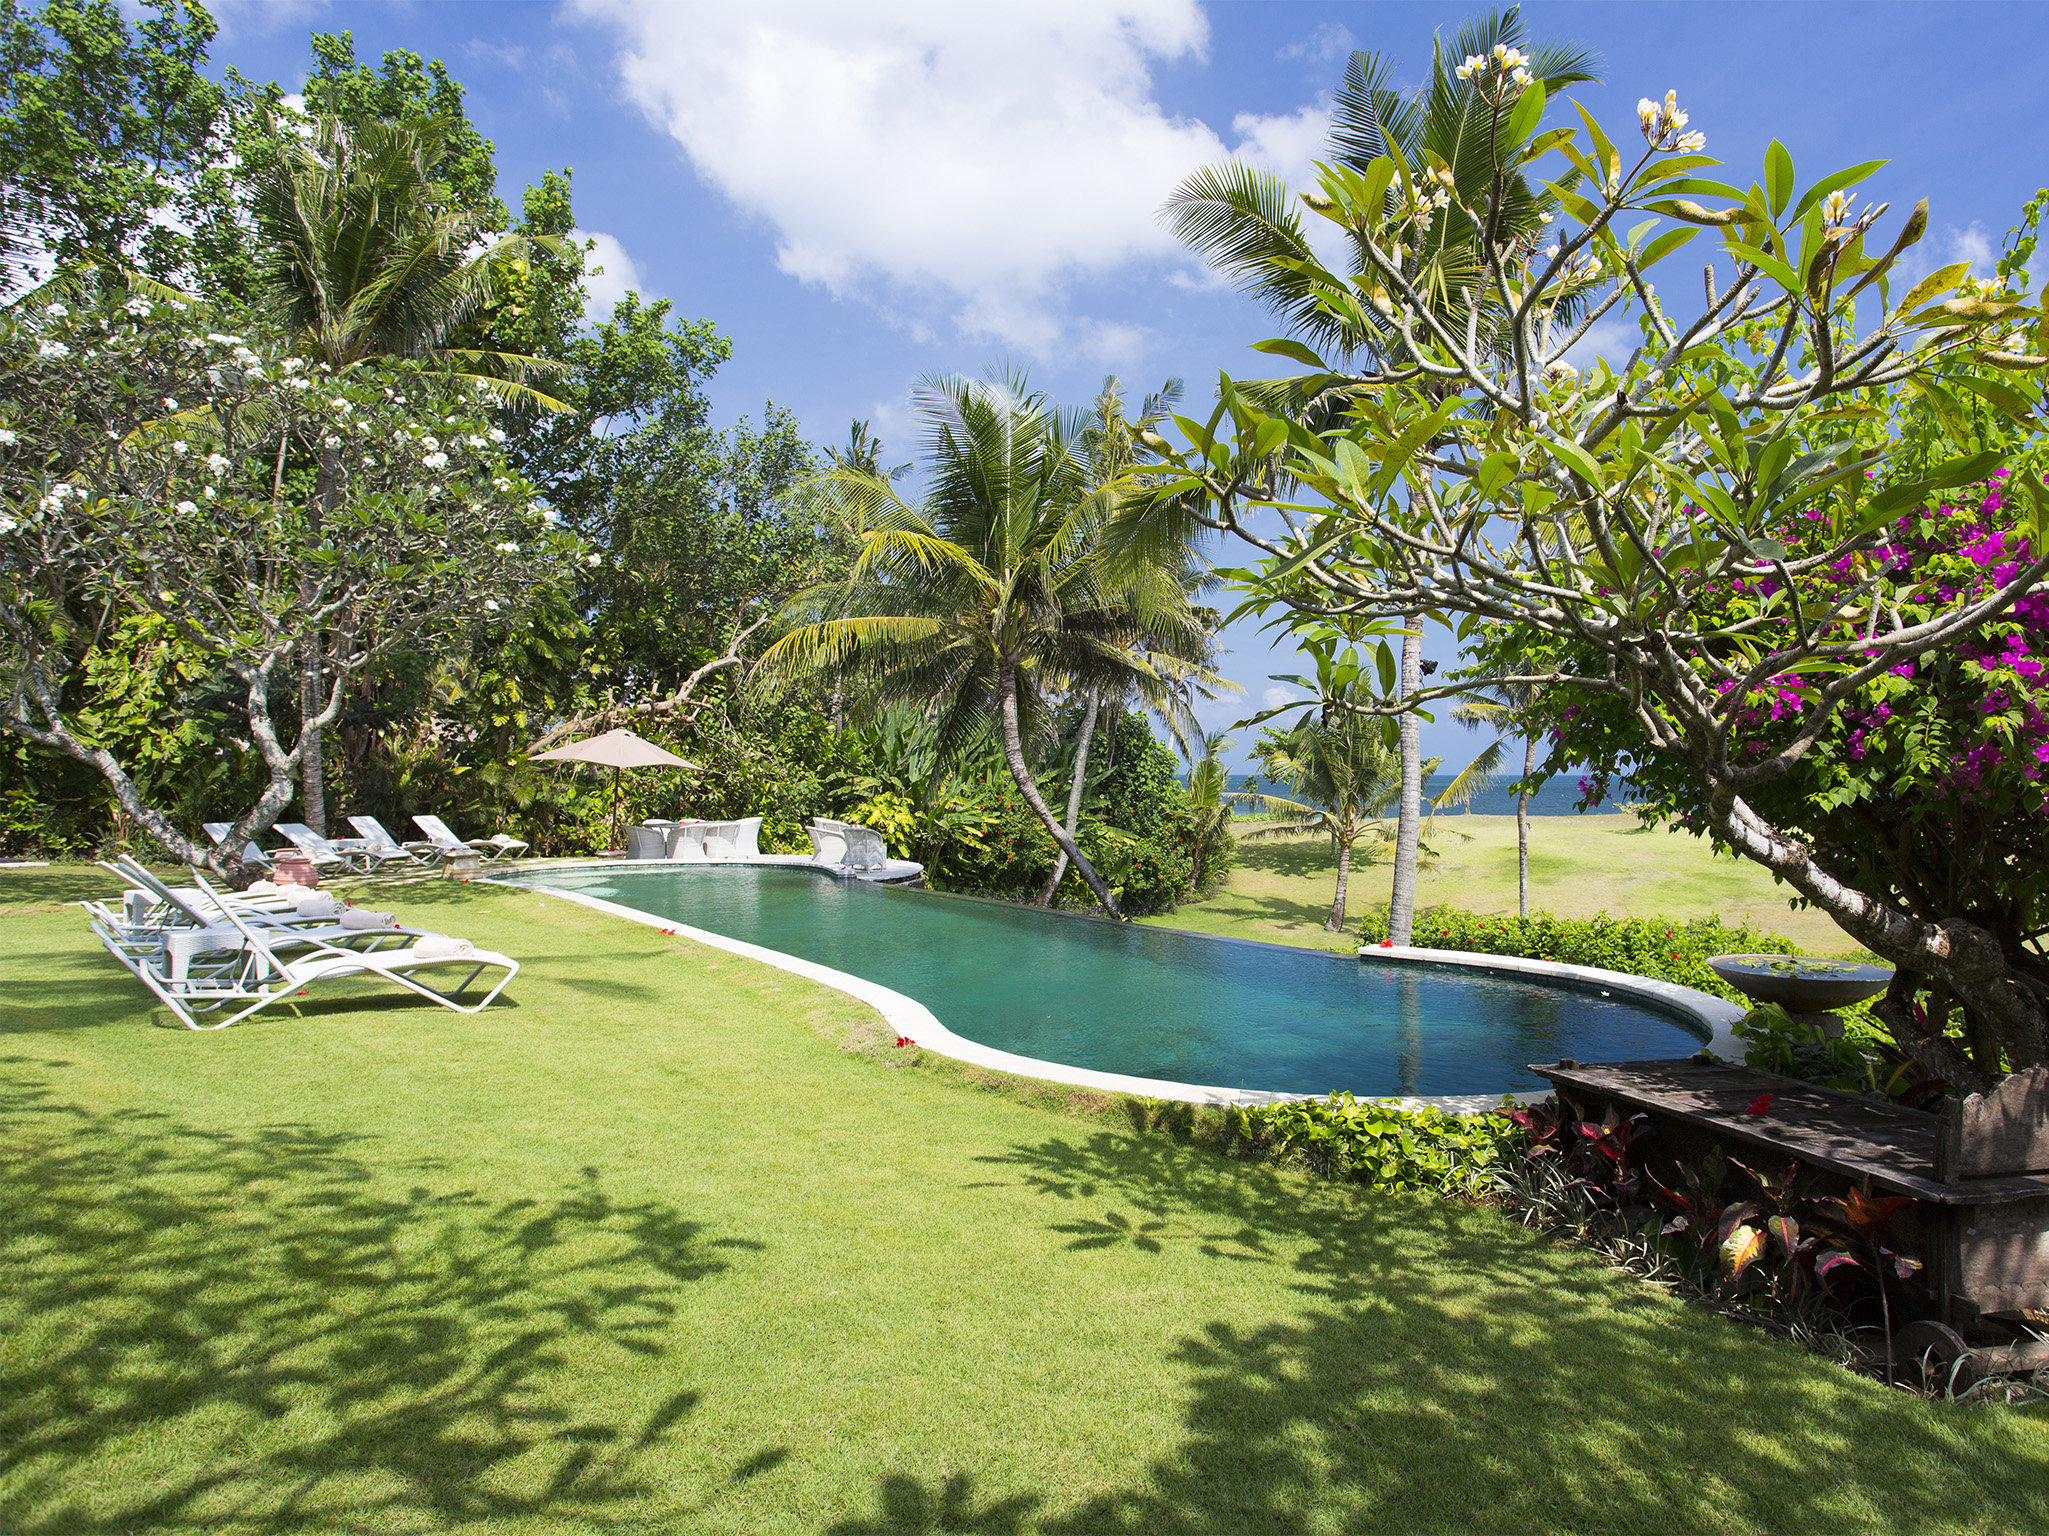 Villa Sungai Tinggi - Pool and lawn - Sungai Tinggi Beach Villa, Canggu, Bali